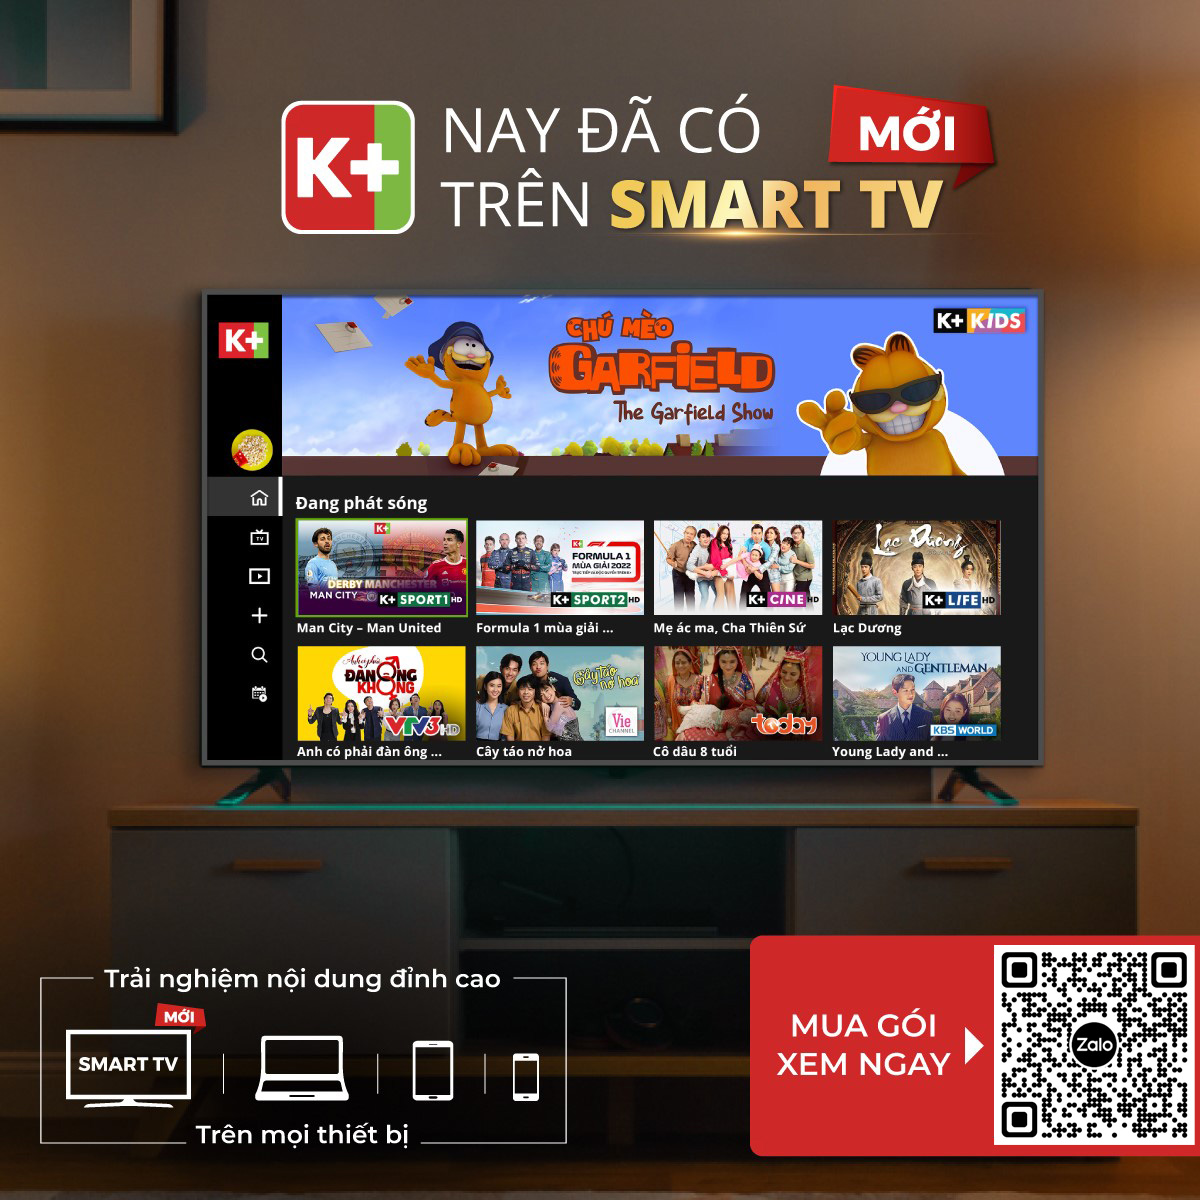 APP k+ TRÊN SMART TV